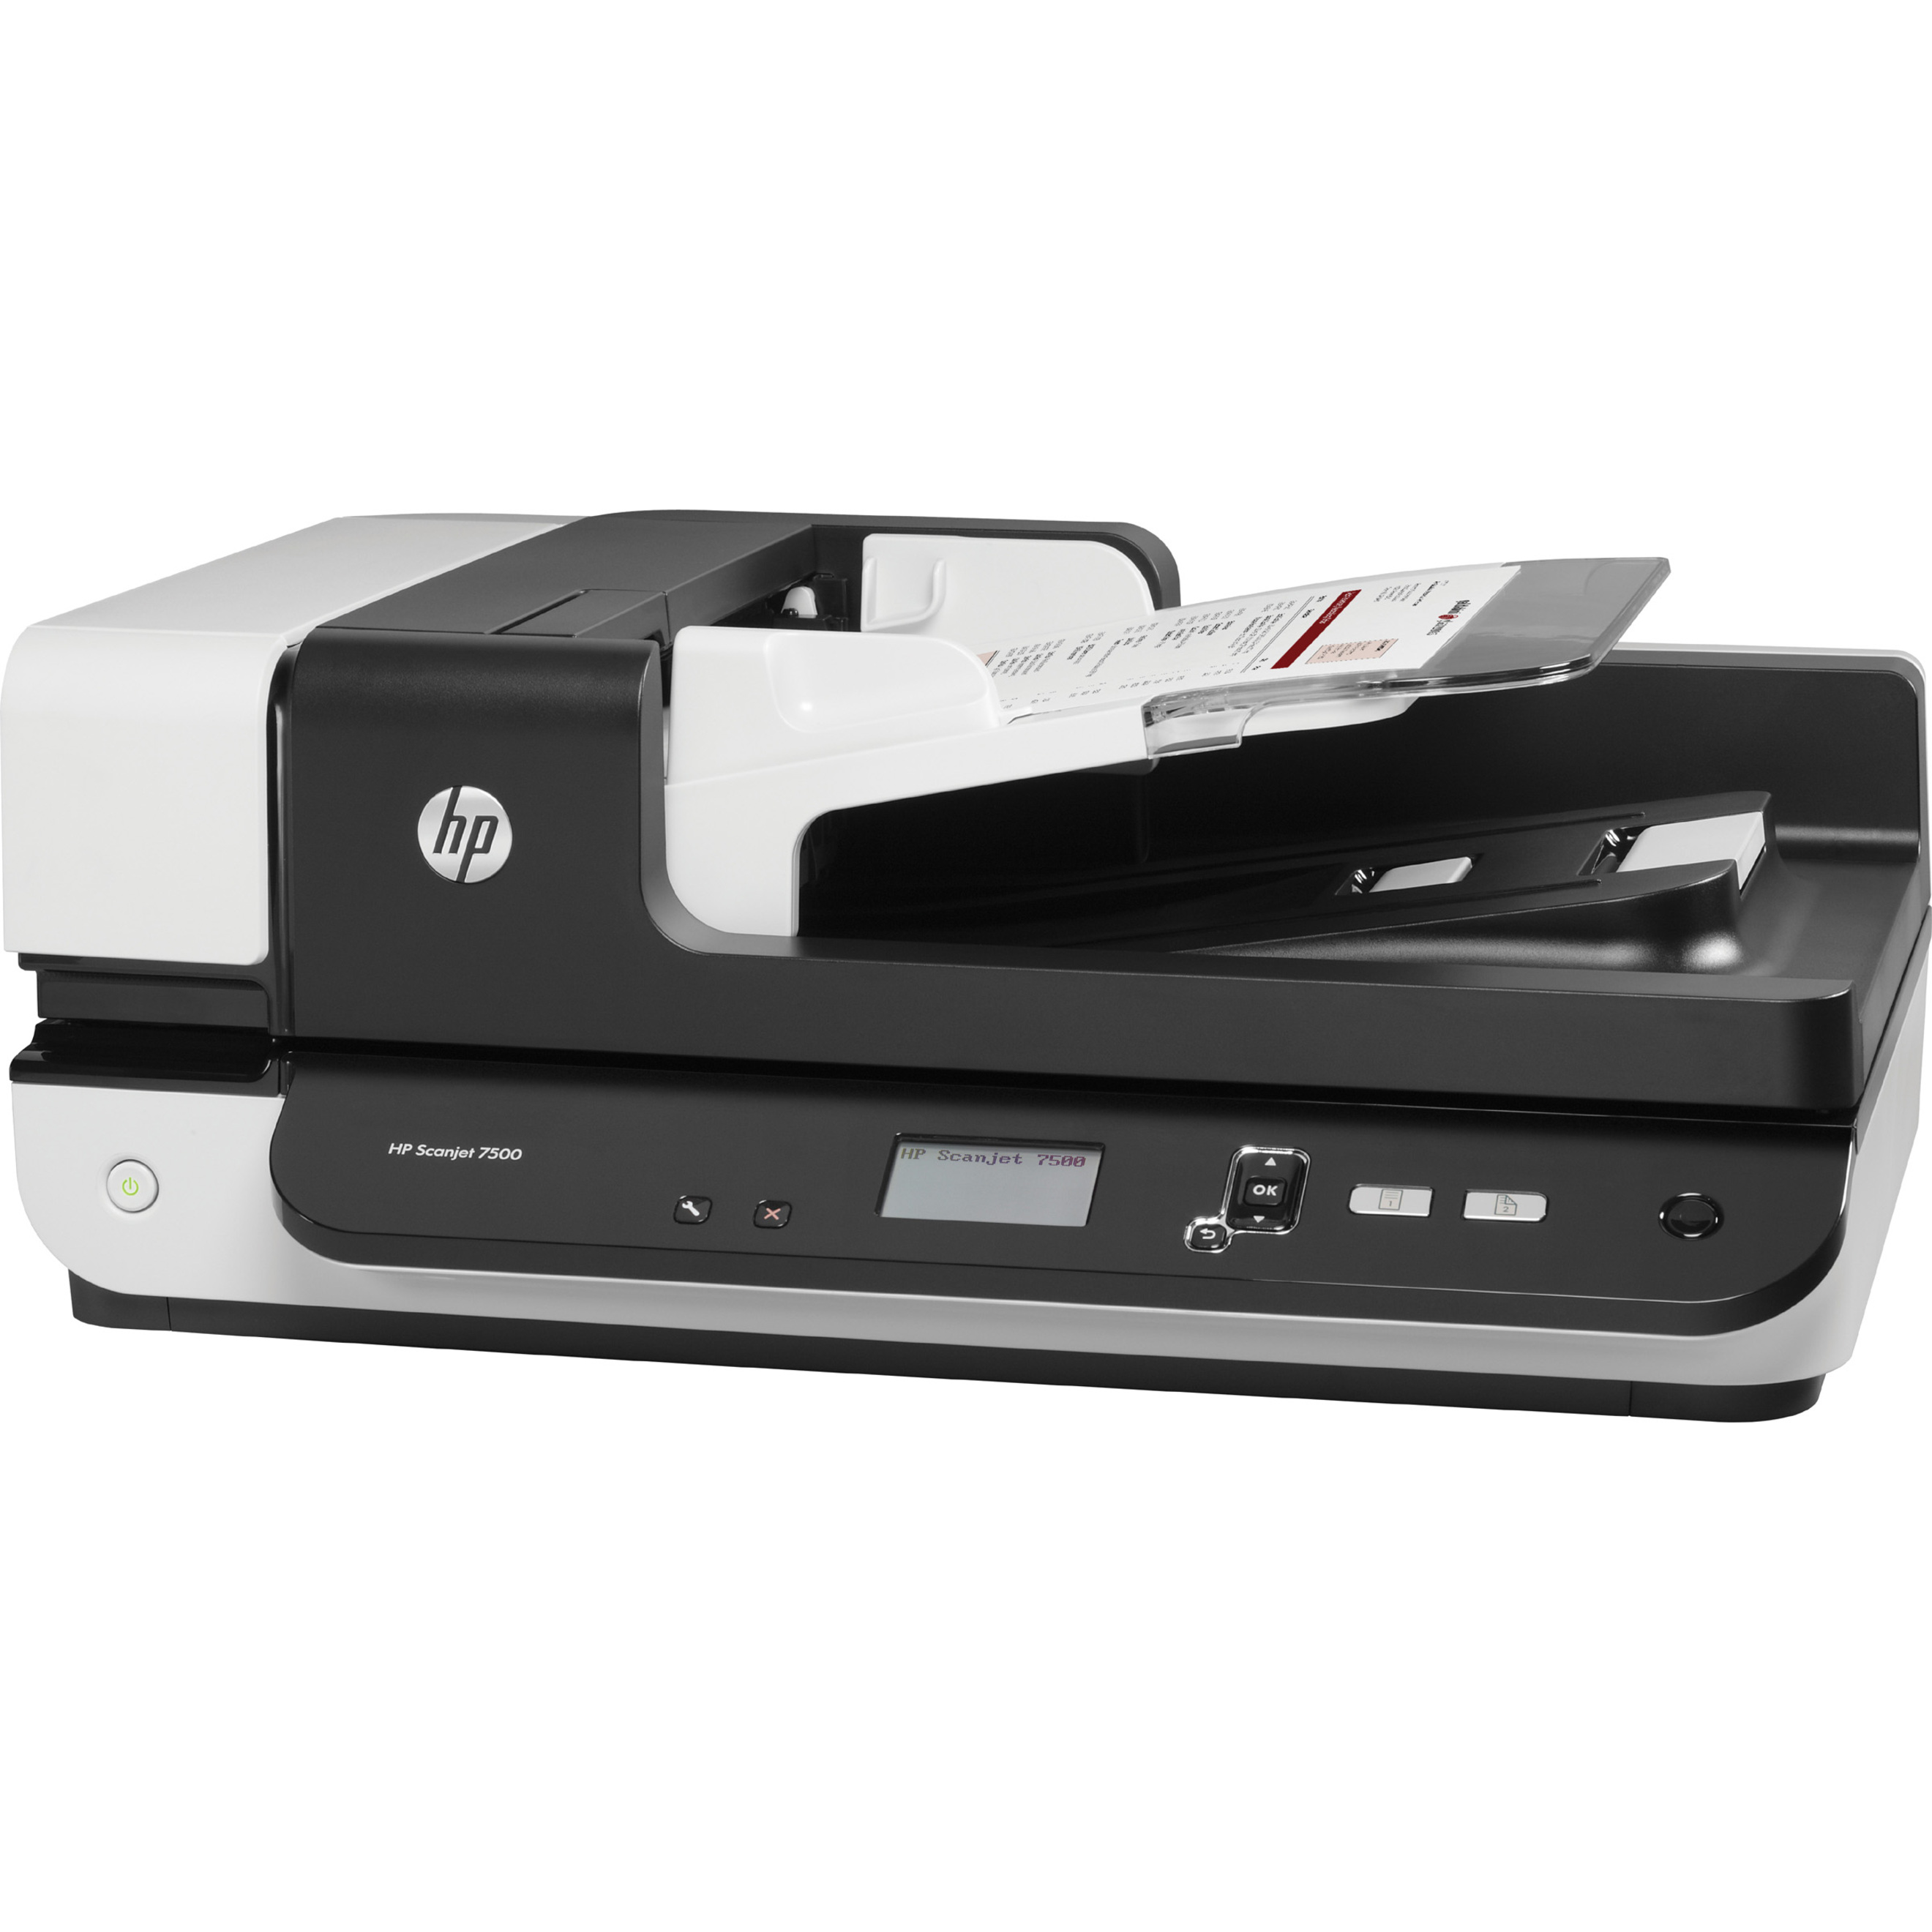 HP Scanjet 7500 Flatbed Scanner, 600 dpi Optical - image 5 of 5